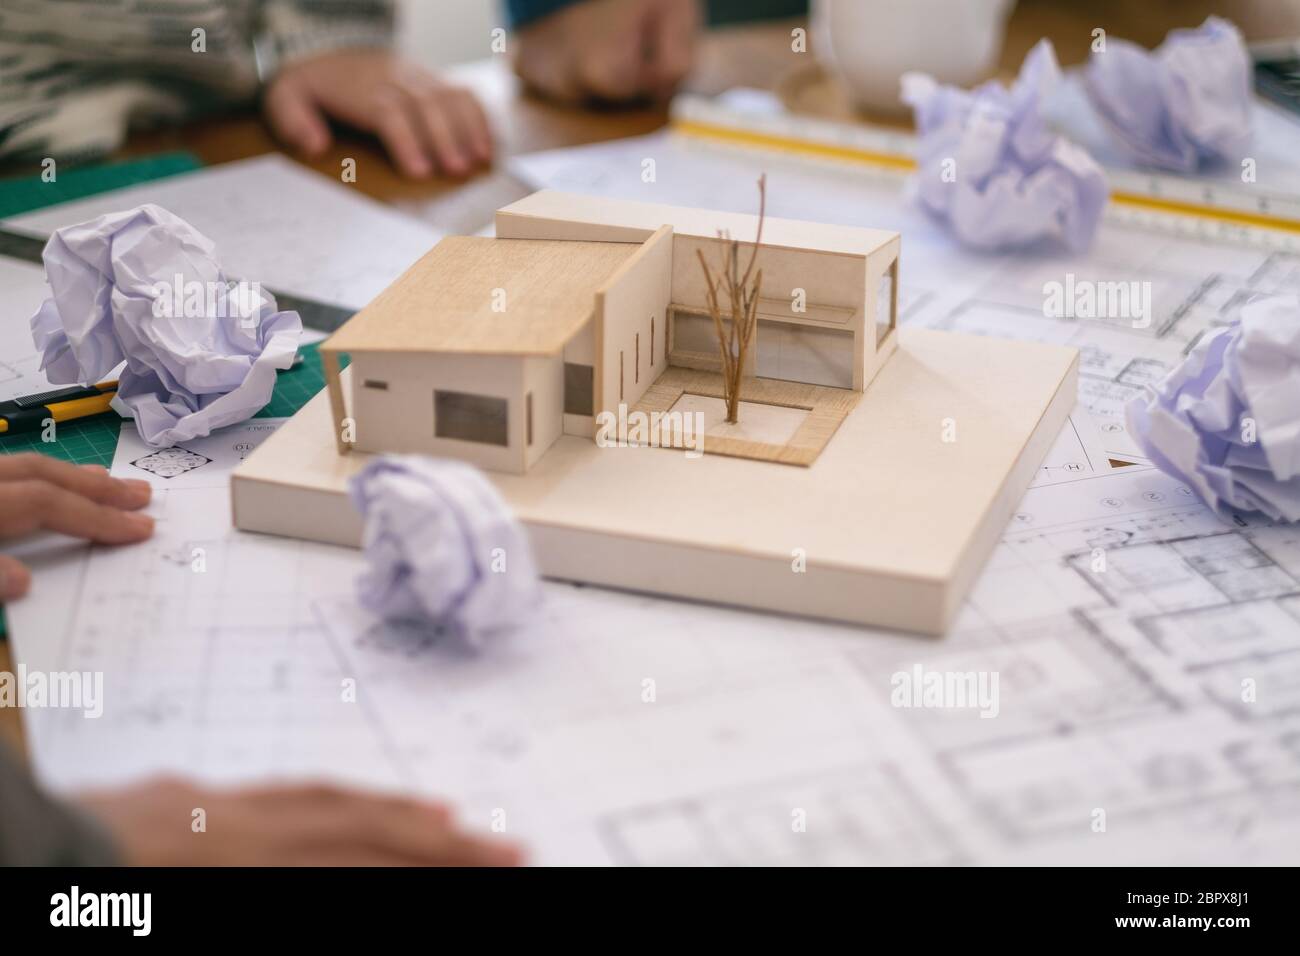 Gruppe von Architekt fühlen nach Zusammenarbeit auf Architektur Modell mit  Shop zeichnen Papier auf Tisch im Amt betonte Stockfotografie - Alamy